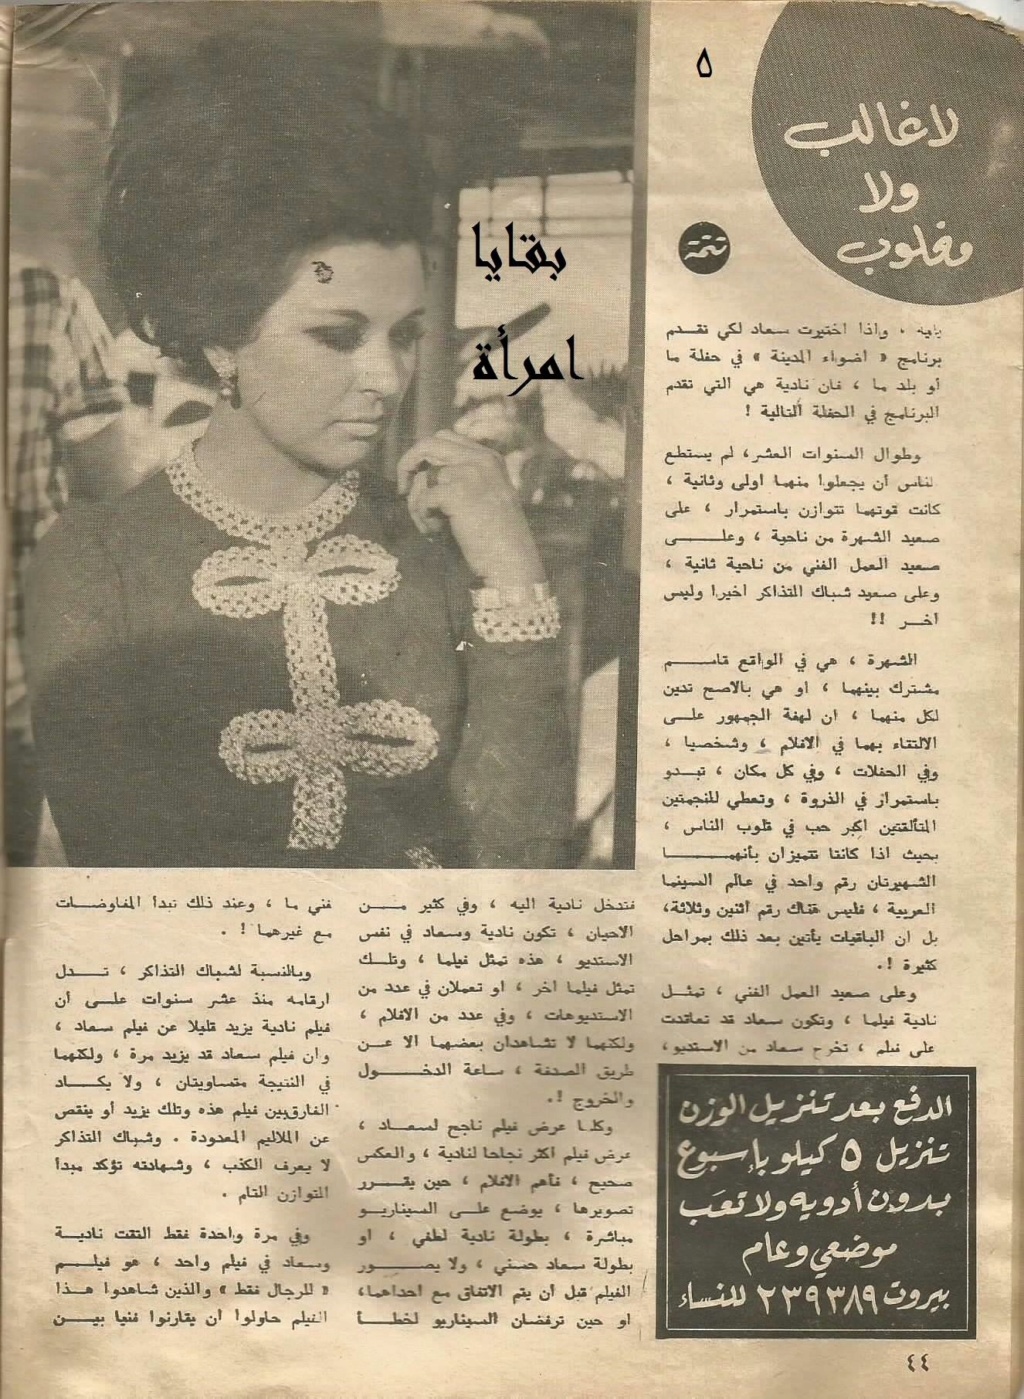 1971 - مقال صحفي : لاغالب ولا مغلوب في مباراة العشر سنوات بين سعاد حسني ونادية لطفي 1971 م 537